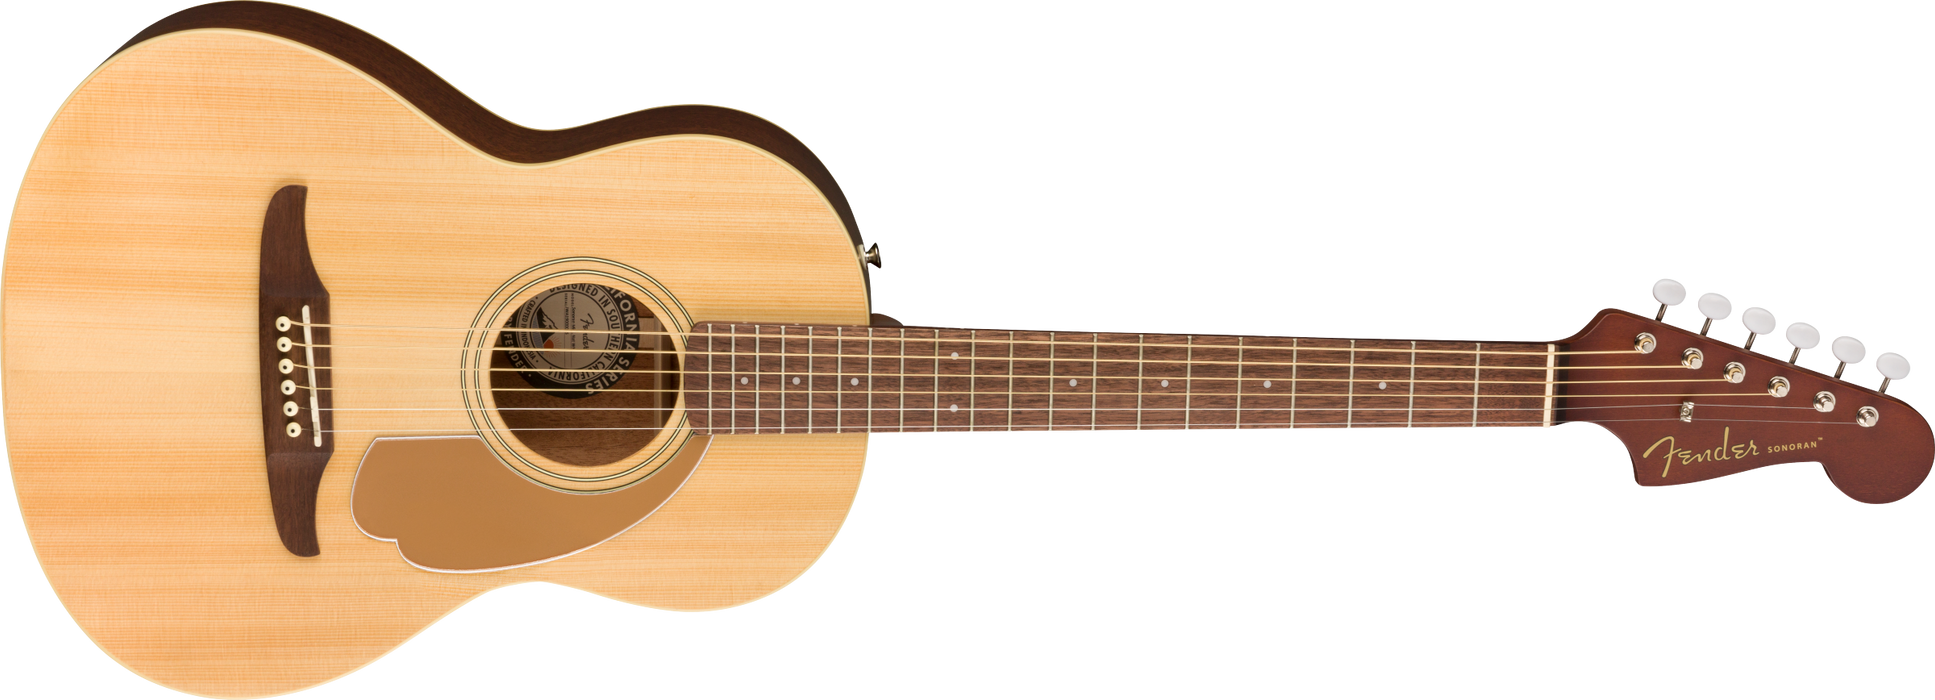 Fender Sonoran Mini Natural Acoustic Guitar